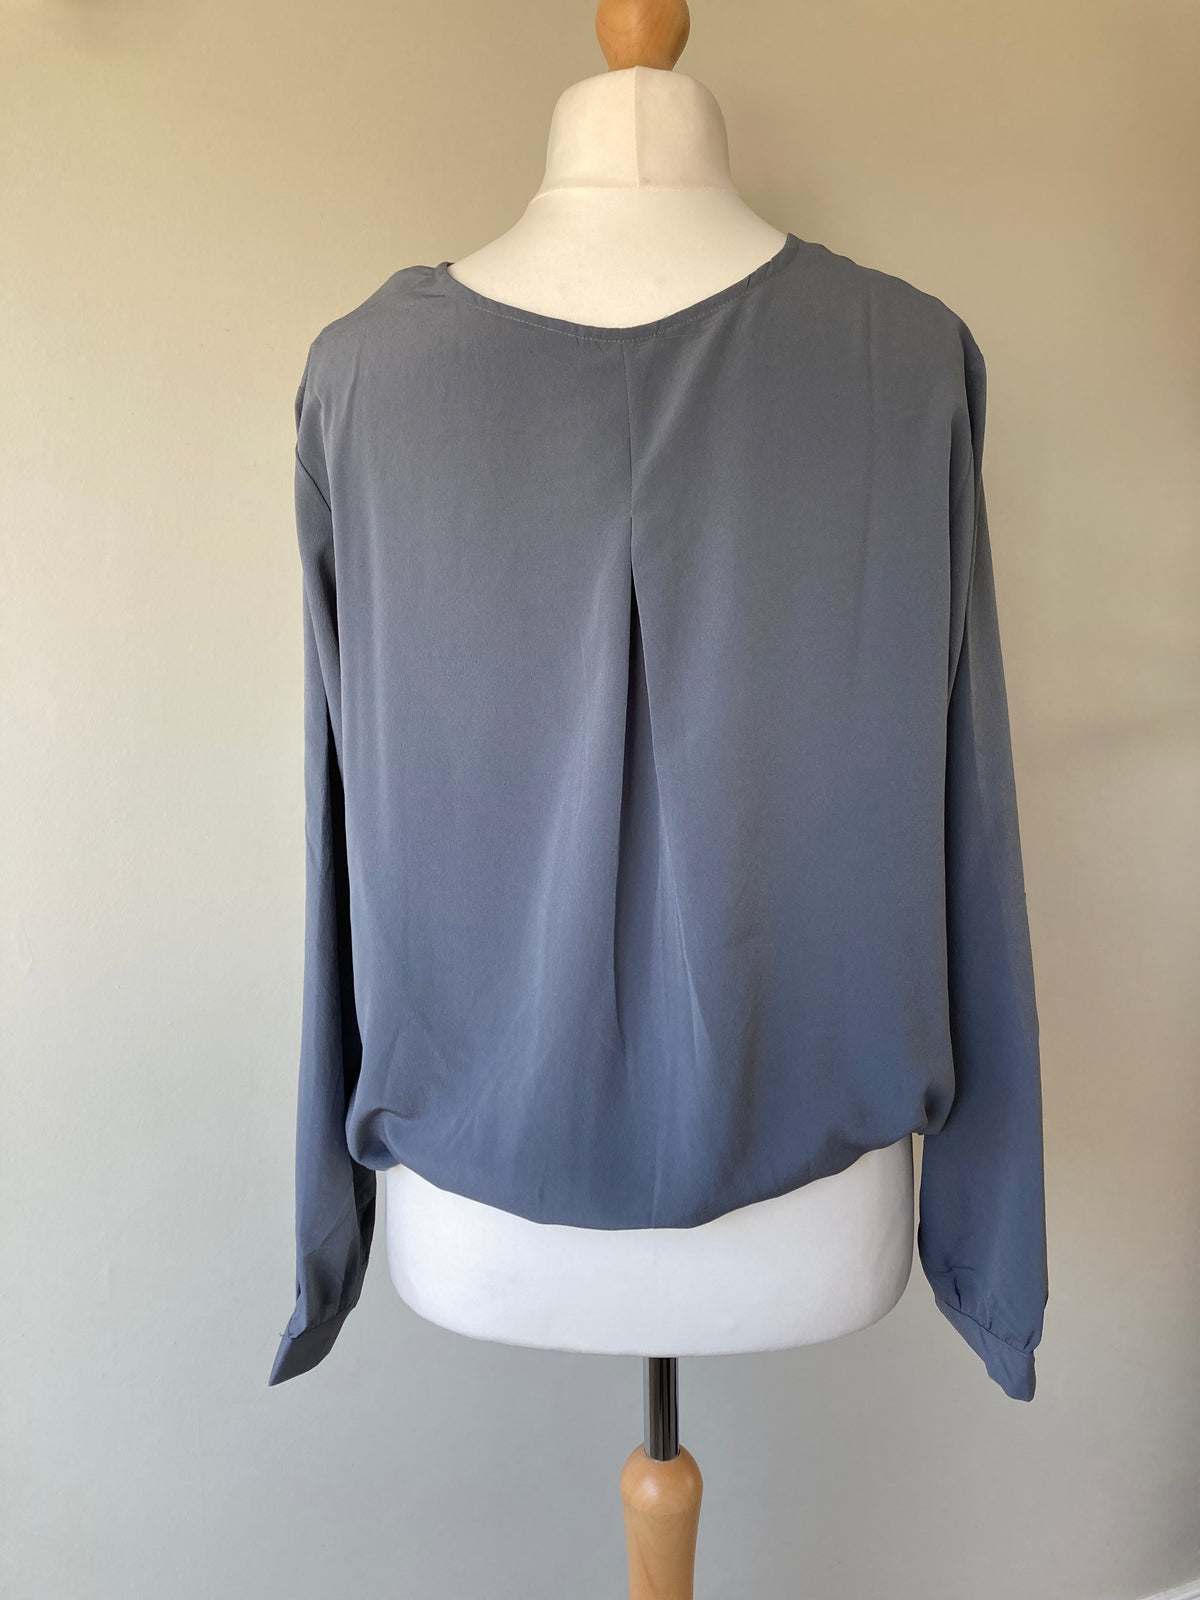 Muted Grey Cross Detail Shirt by BODYFLIRT - Size 20